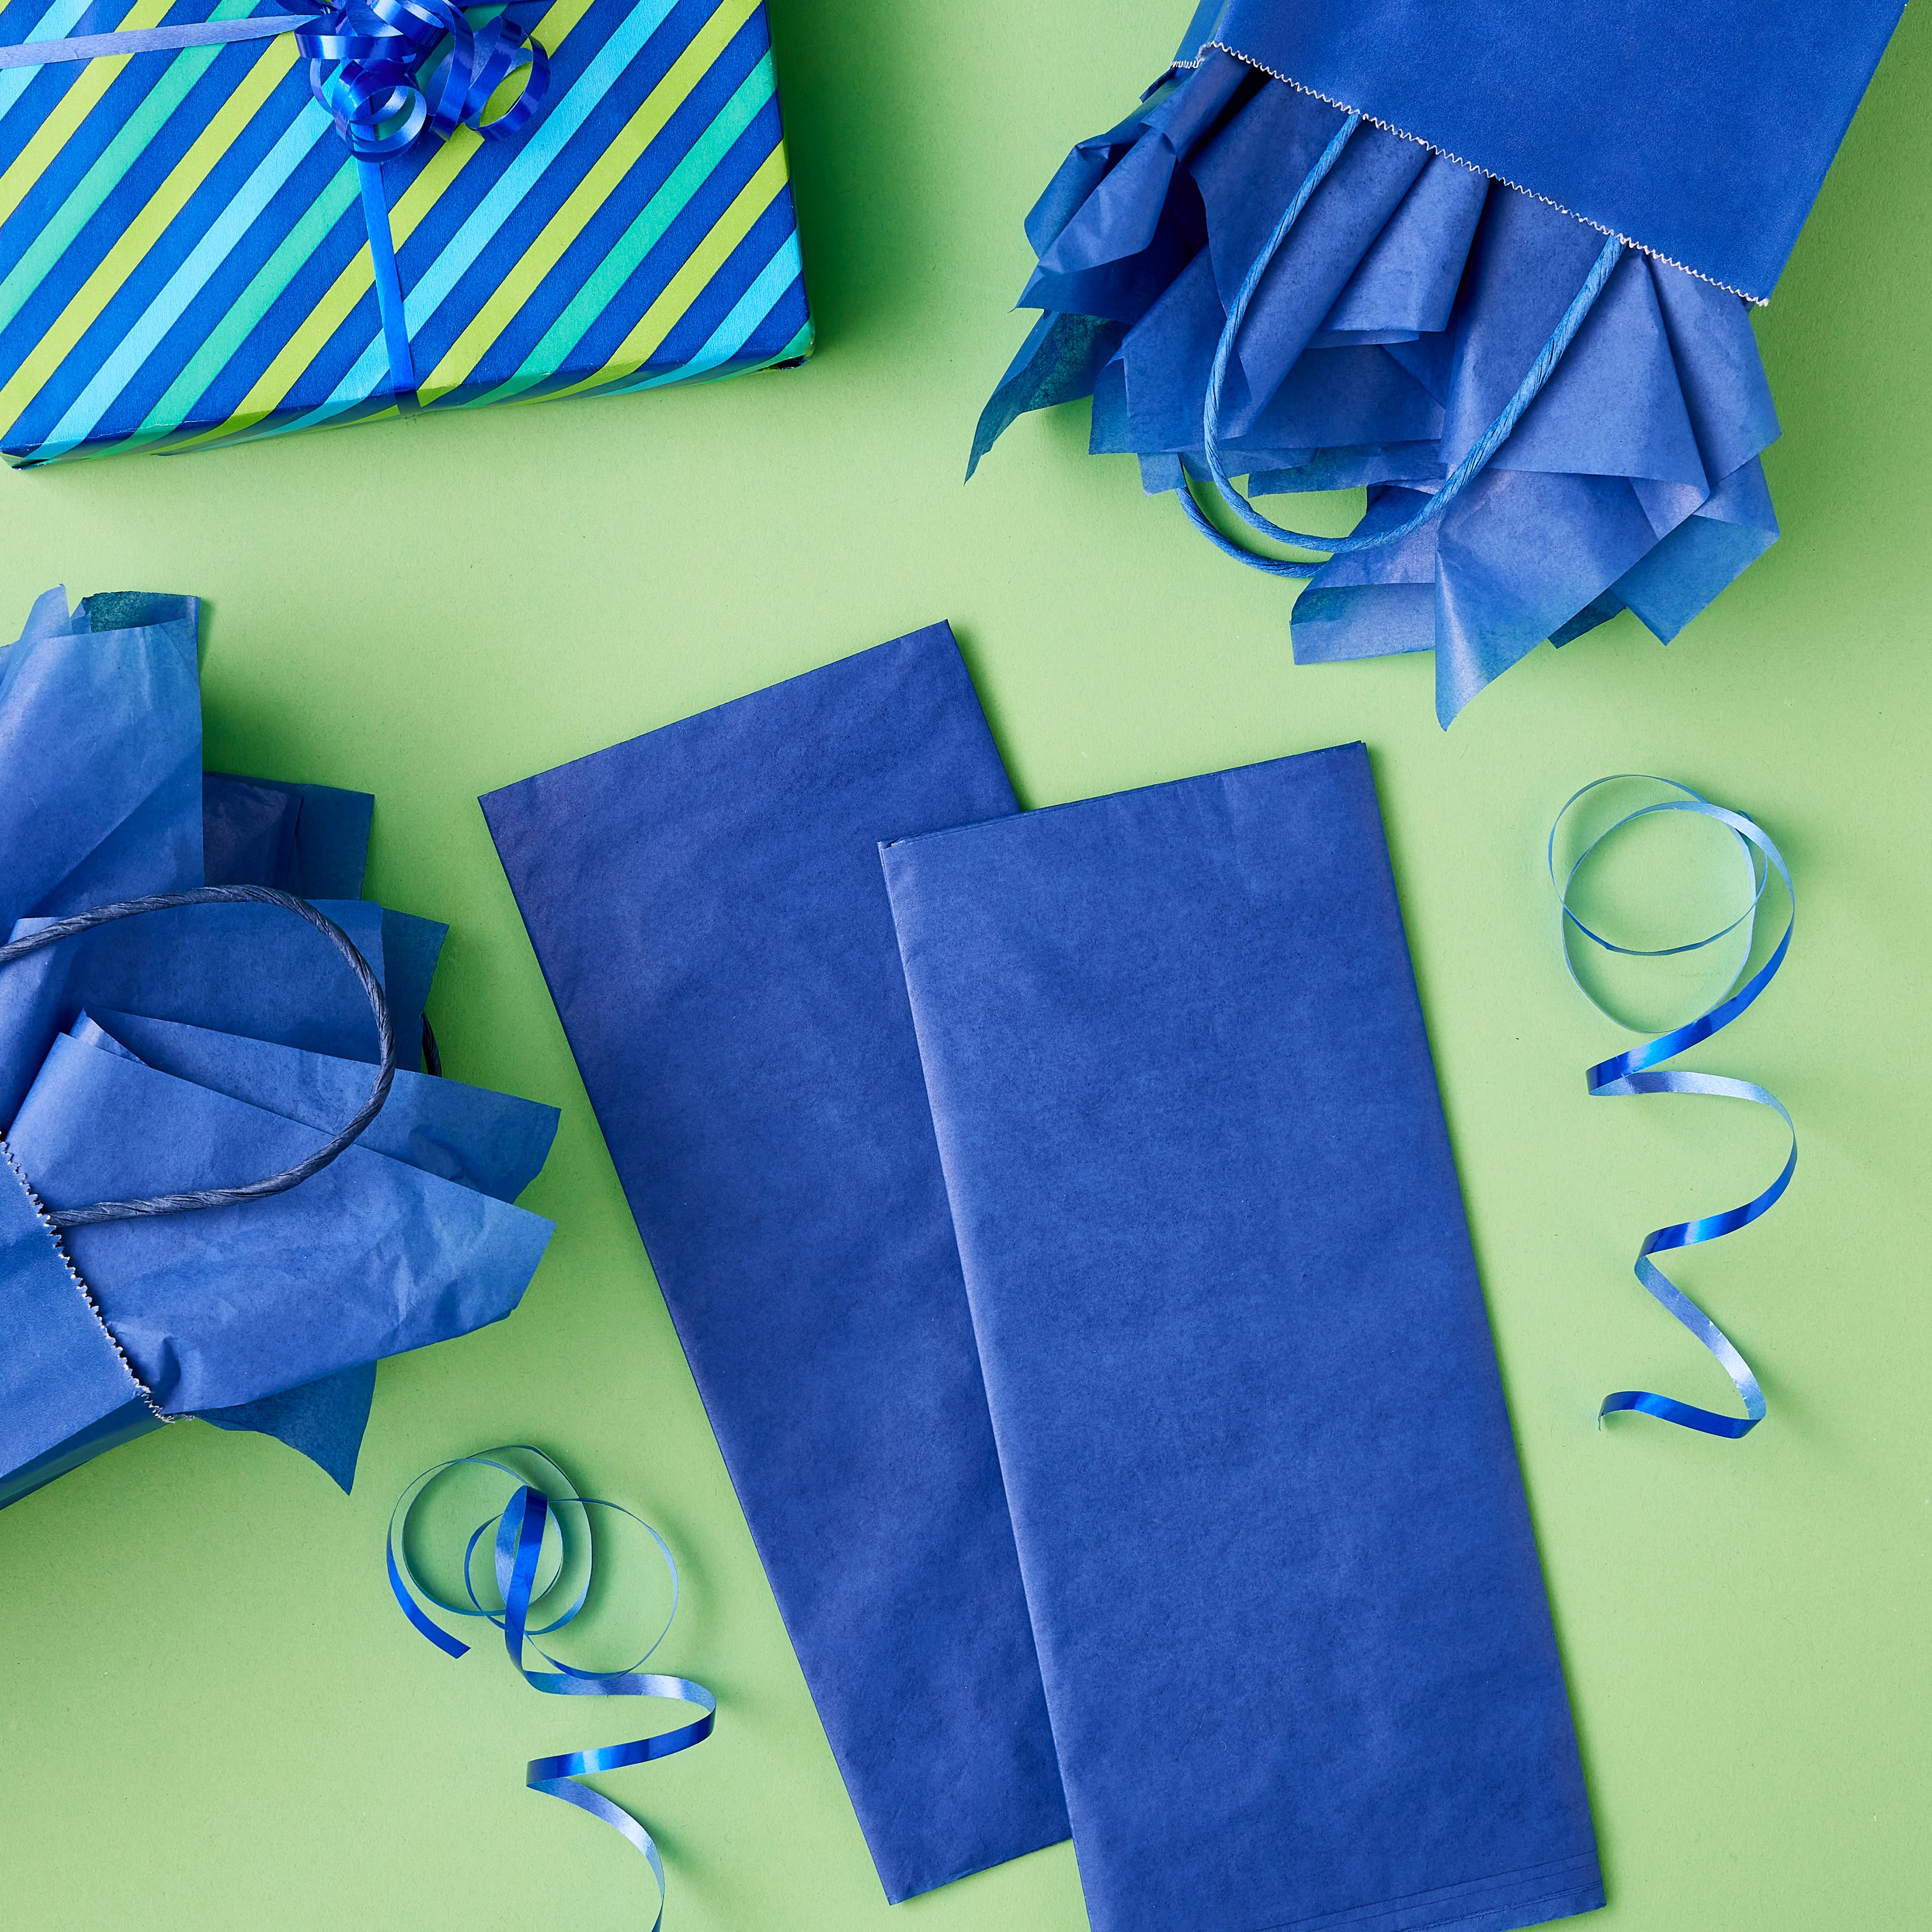 Blue tissue paper — Nature's Workshop Plus